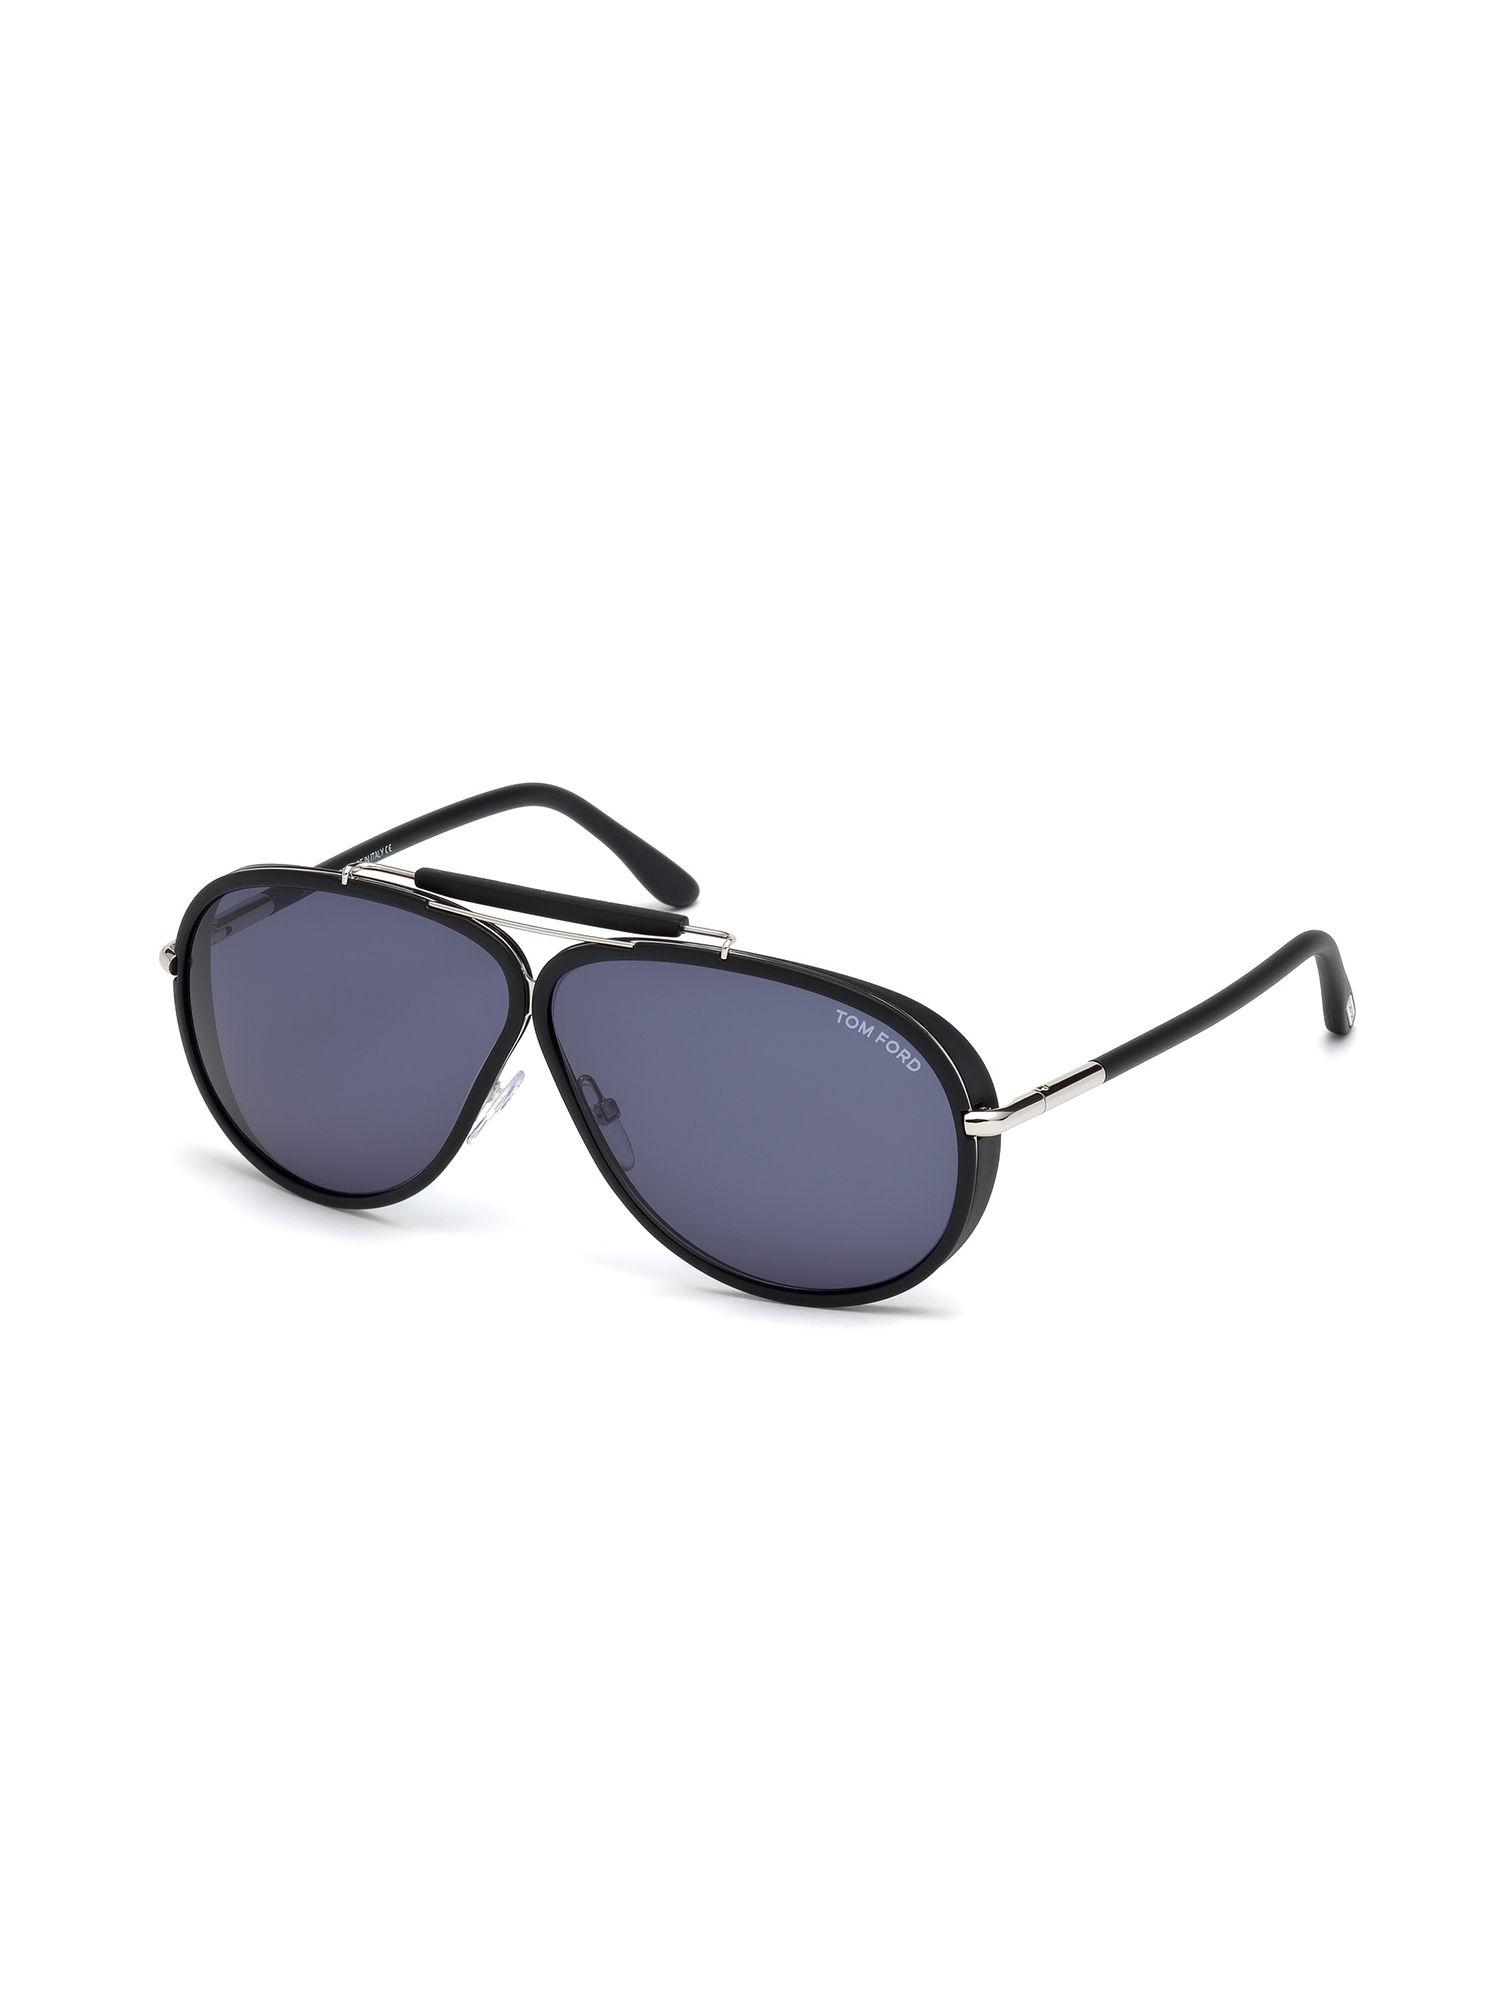 black oversized sunglasses - ft0509 65 02v